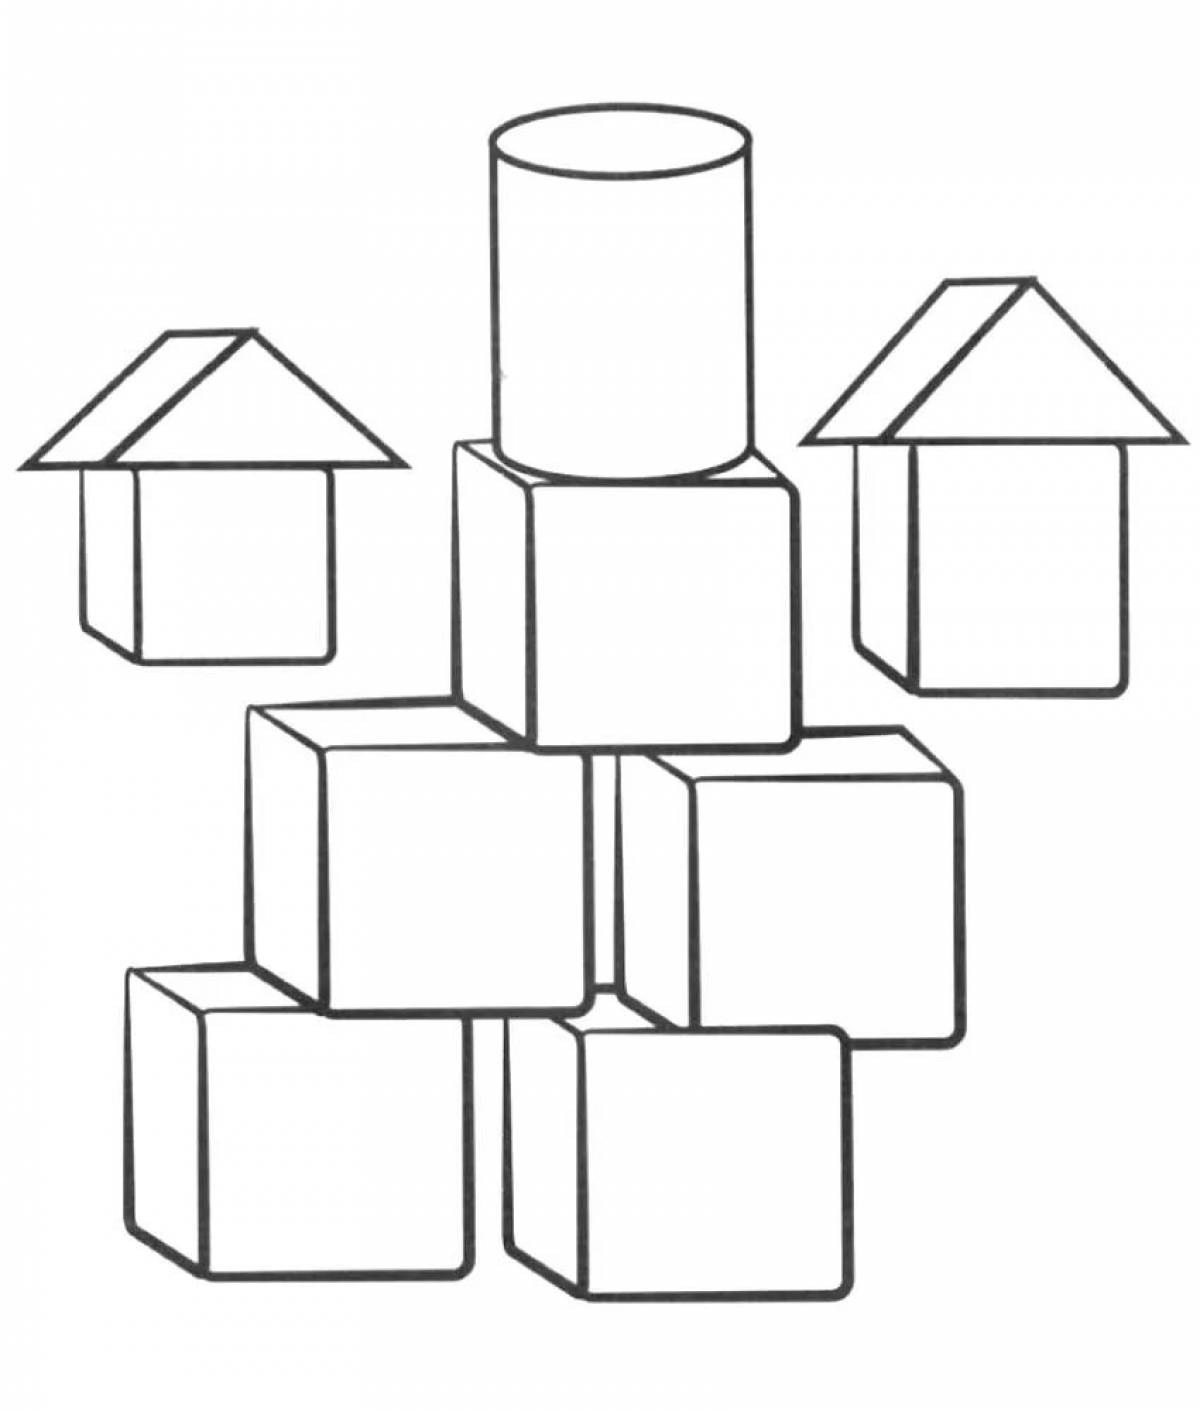 Cube for children #18